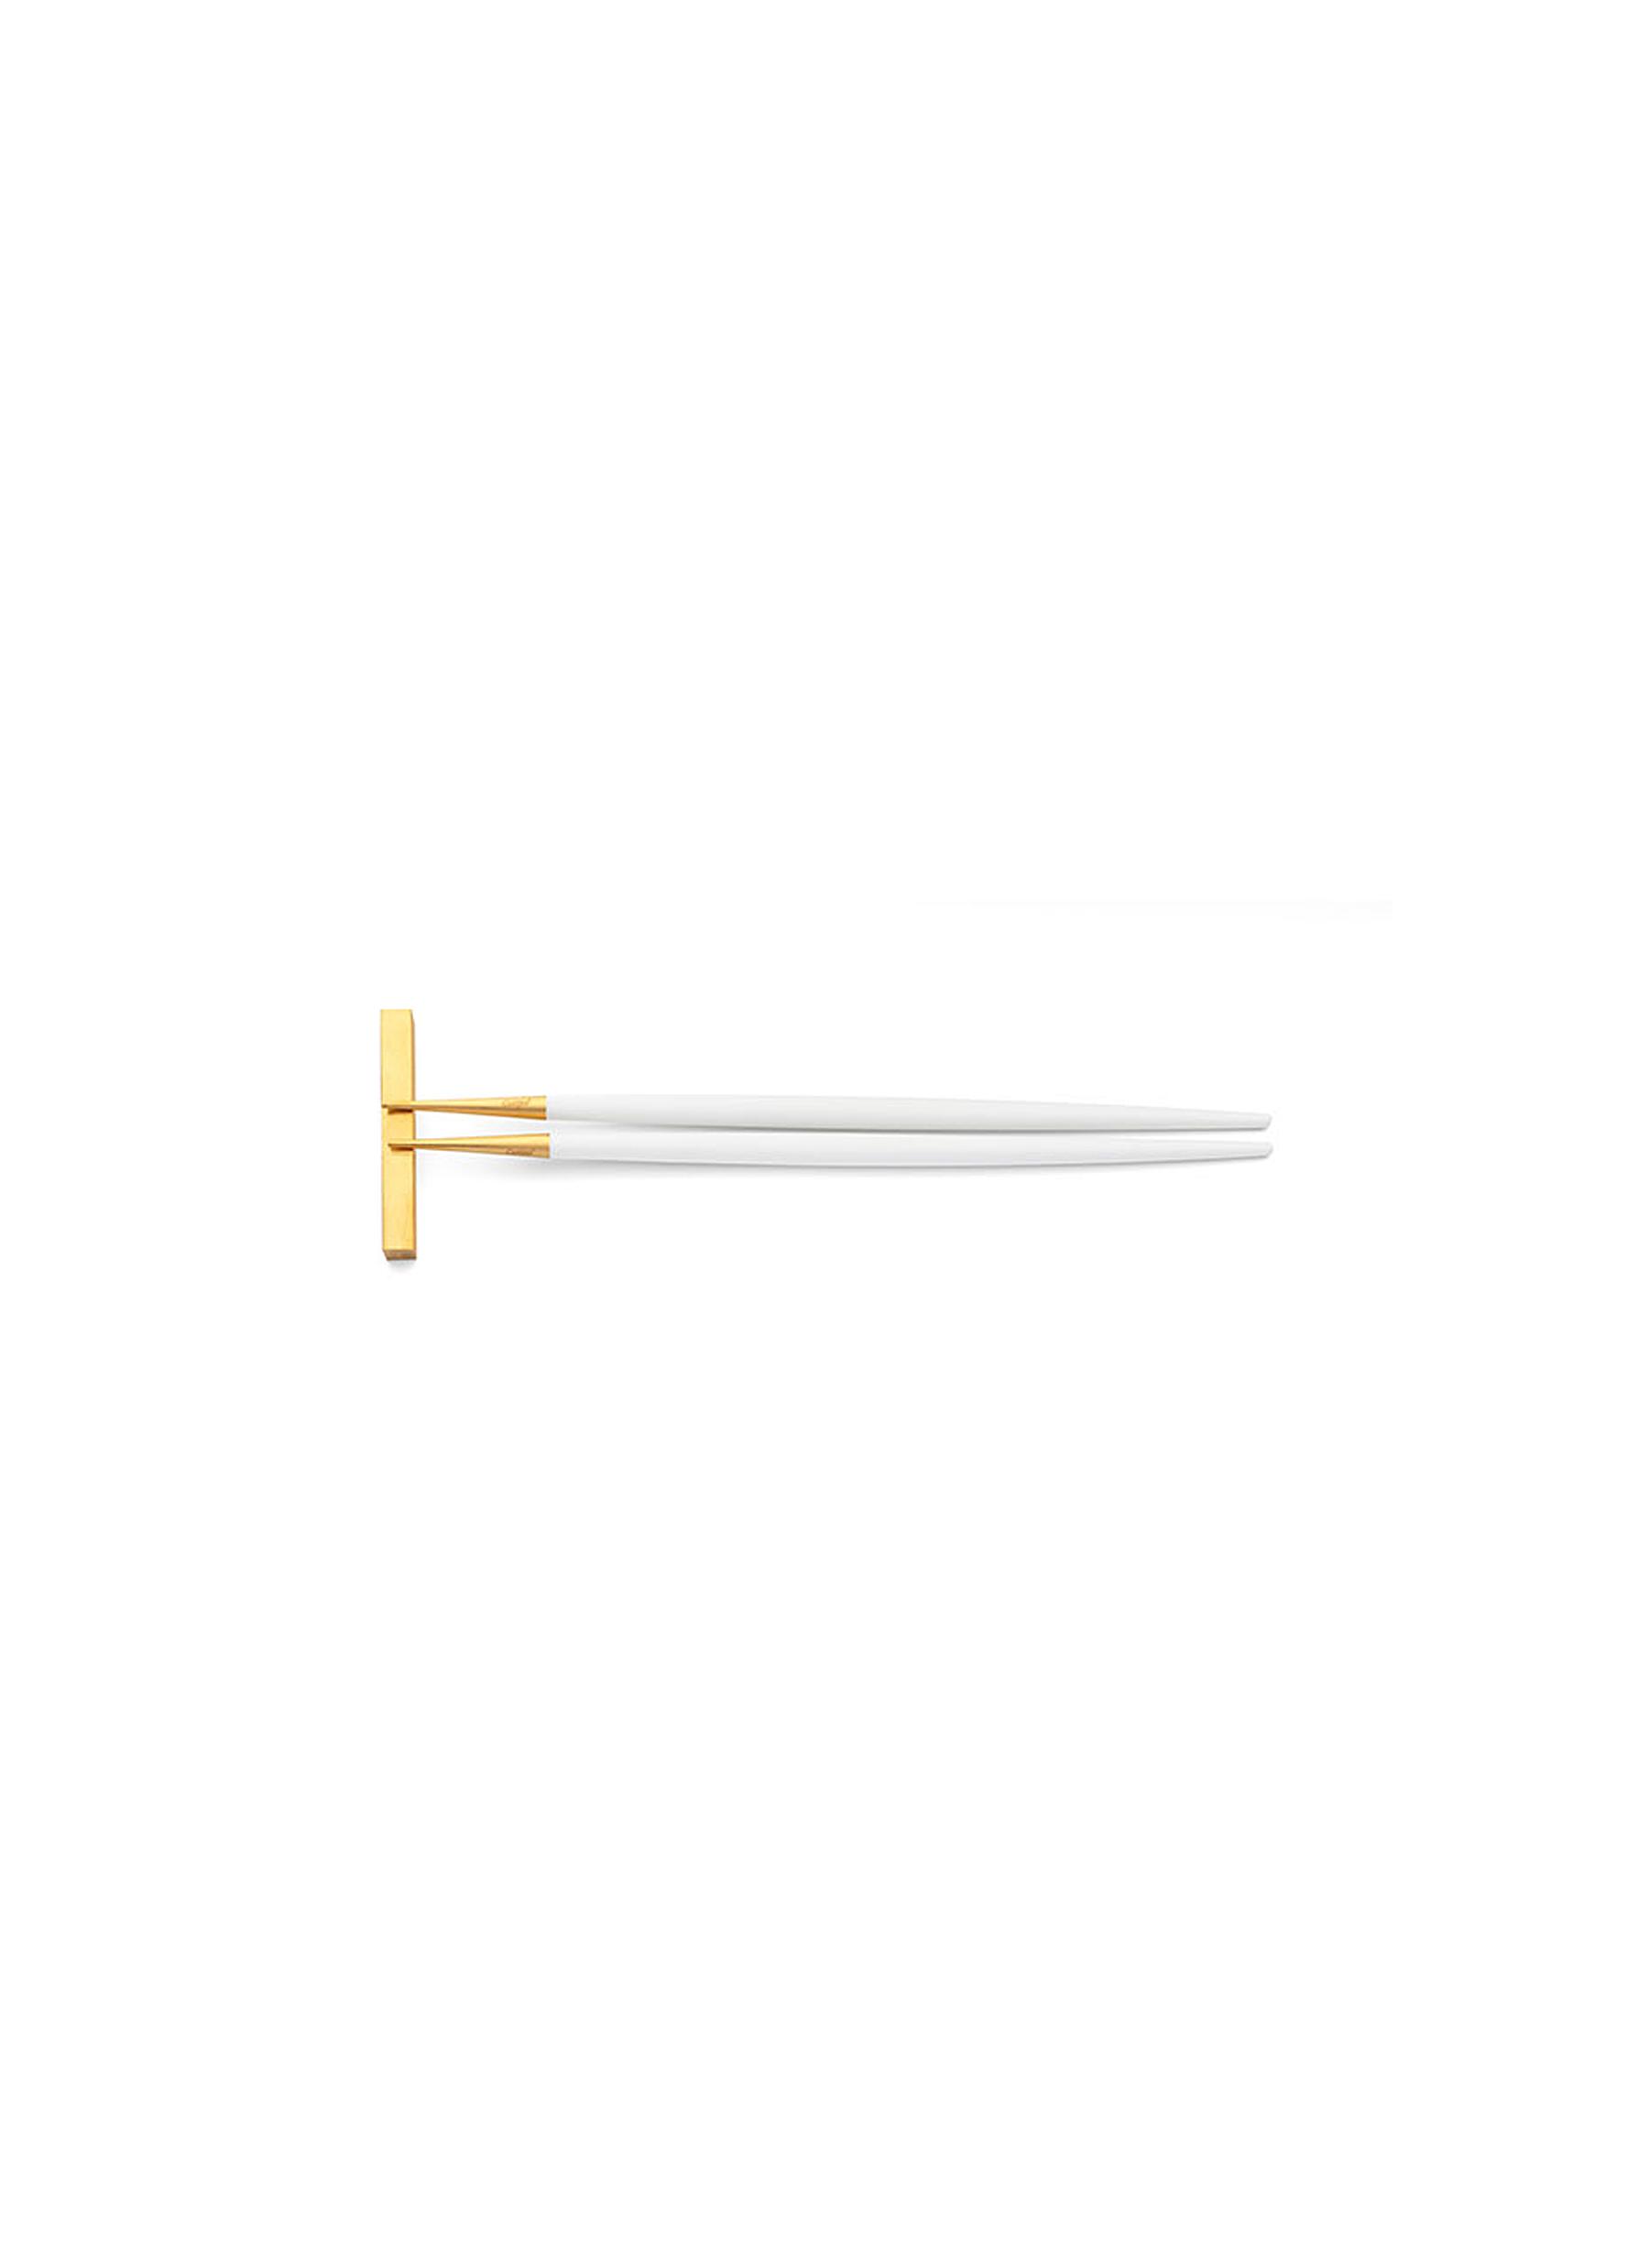 unique chopsticks set